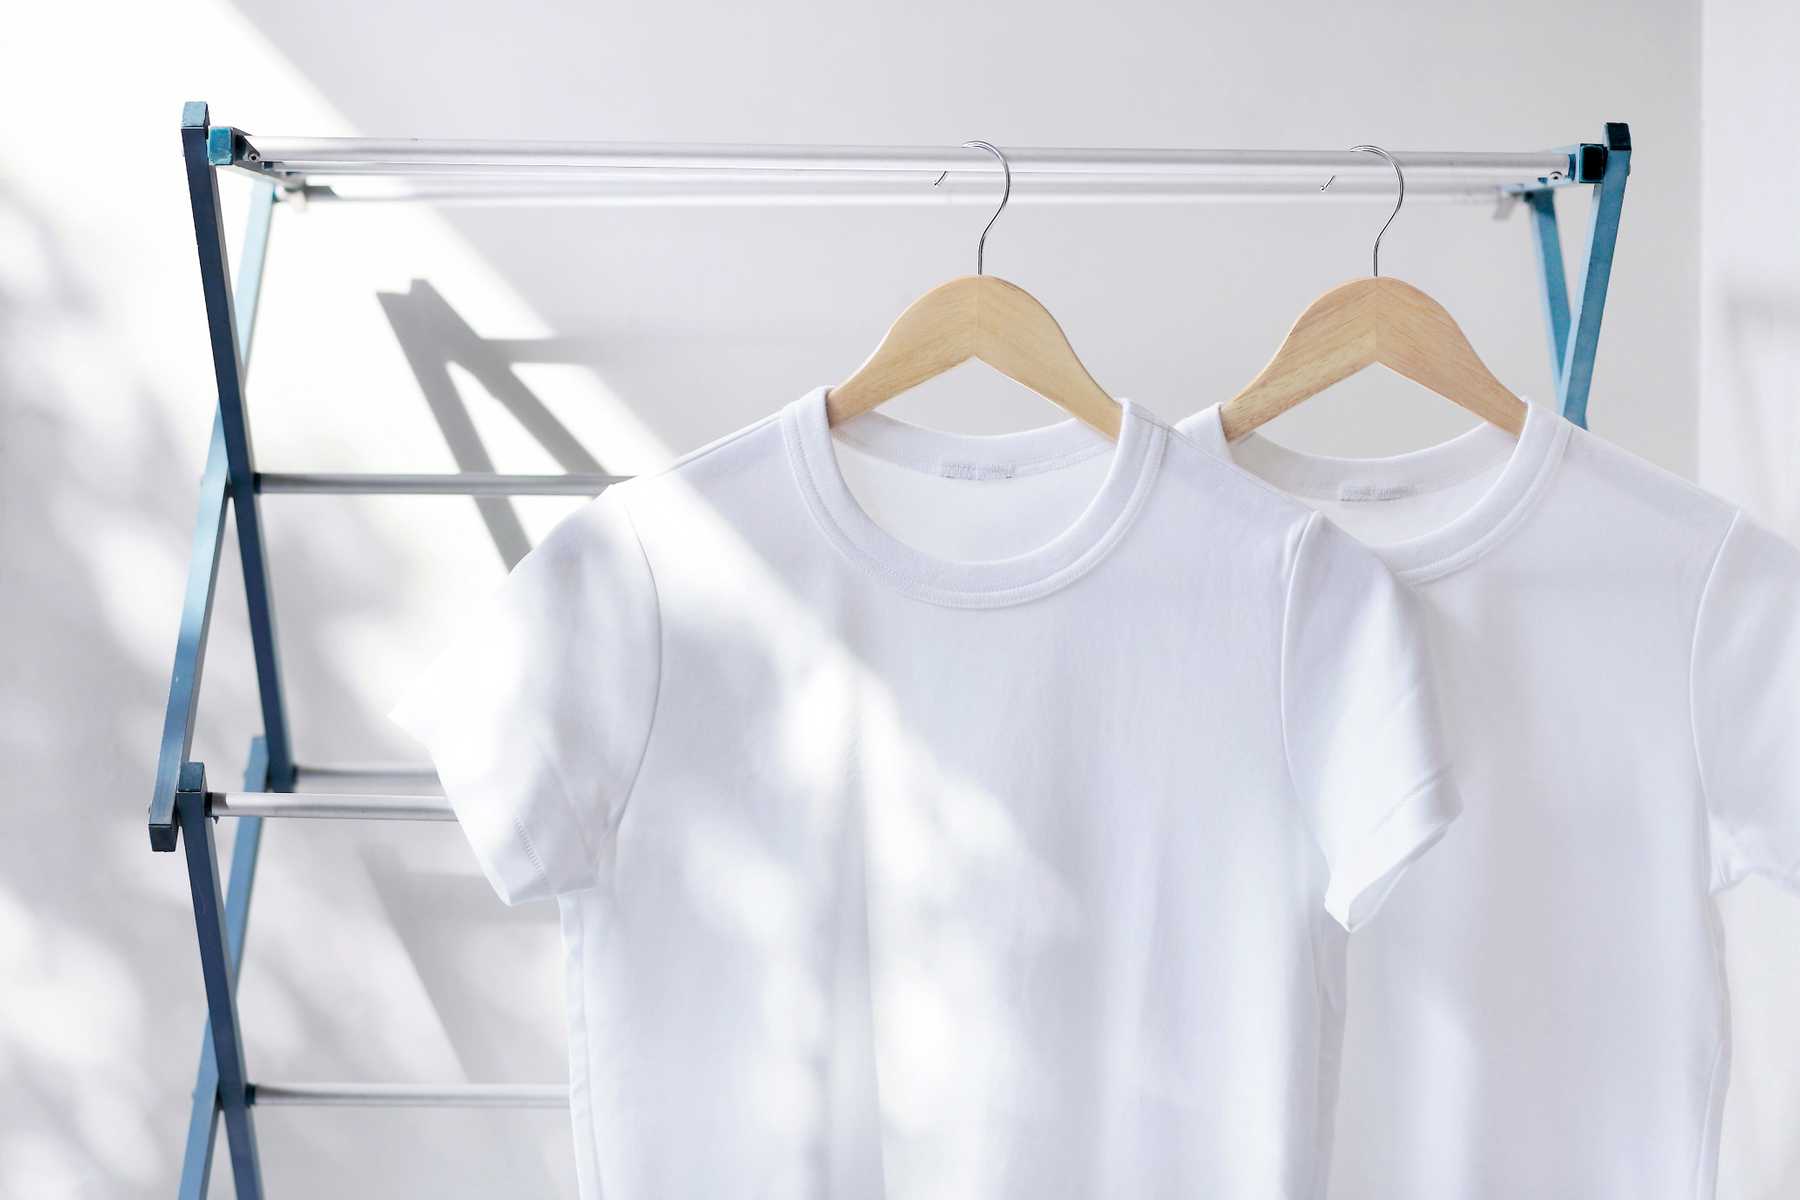 4 chú ý khi chọn thuốc tẩy trắng quần áo loại nào tốt?